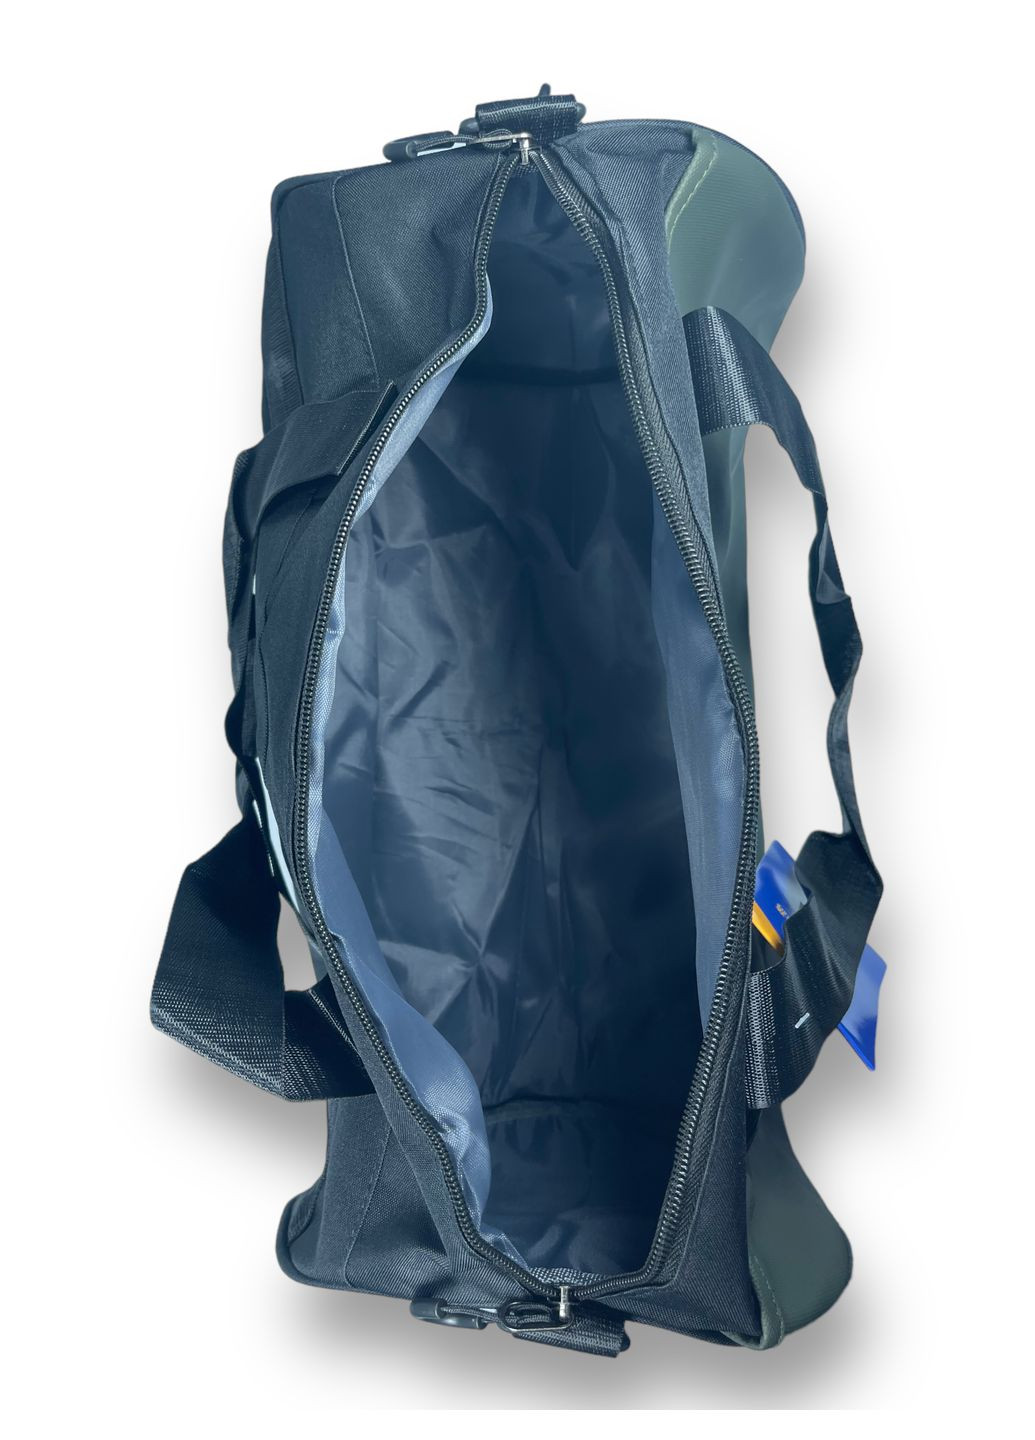 Дорожная сумка 45 л 1 отделение 2 скрытых отделения размер: 35*56*22 см зеленая Jilipng (285814812)